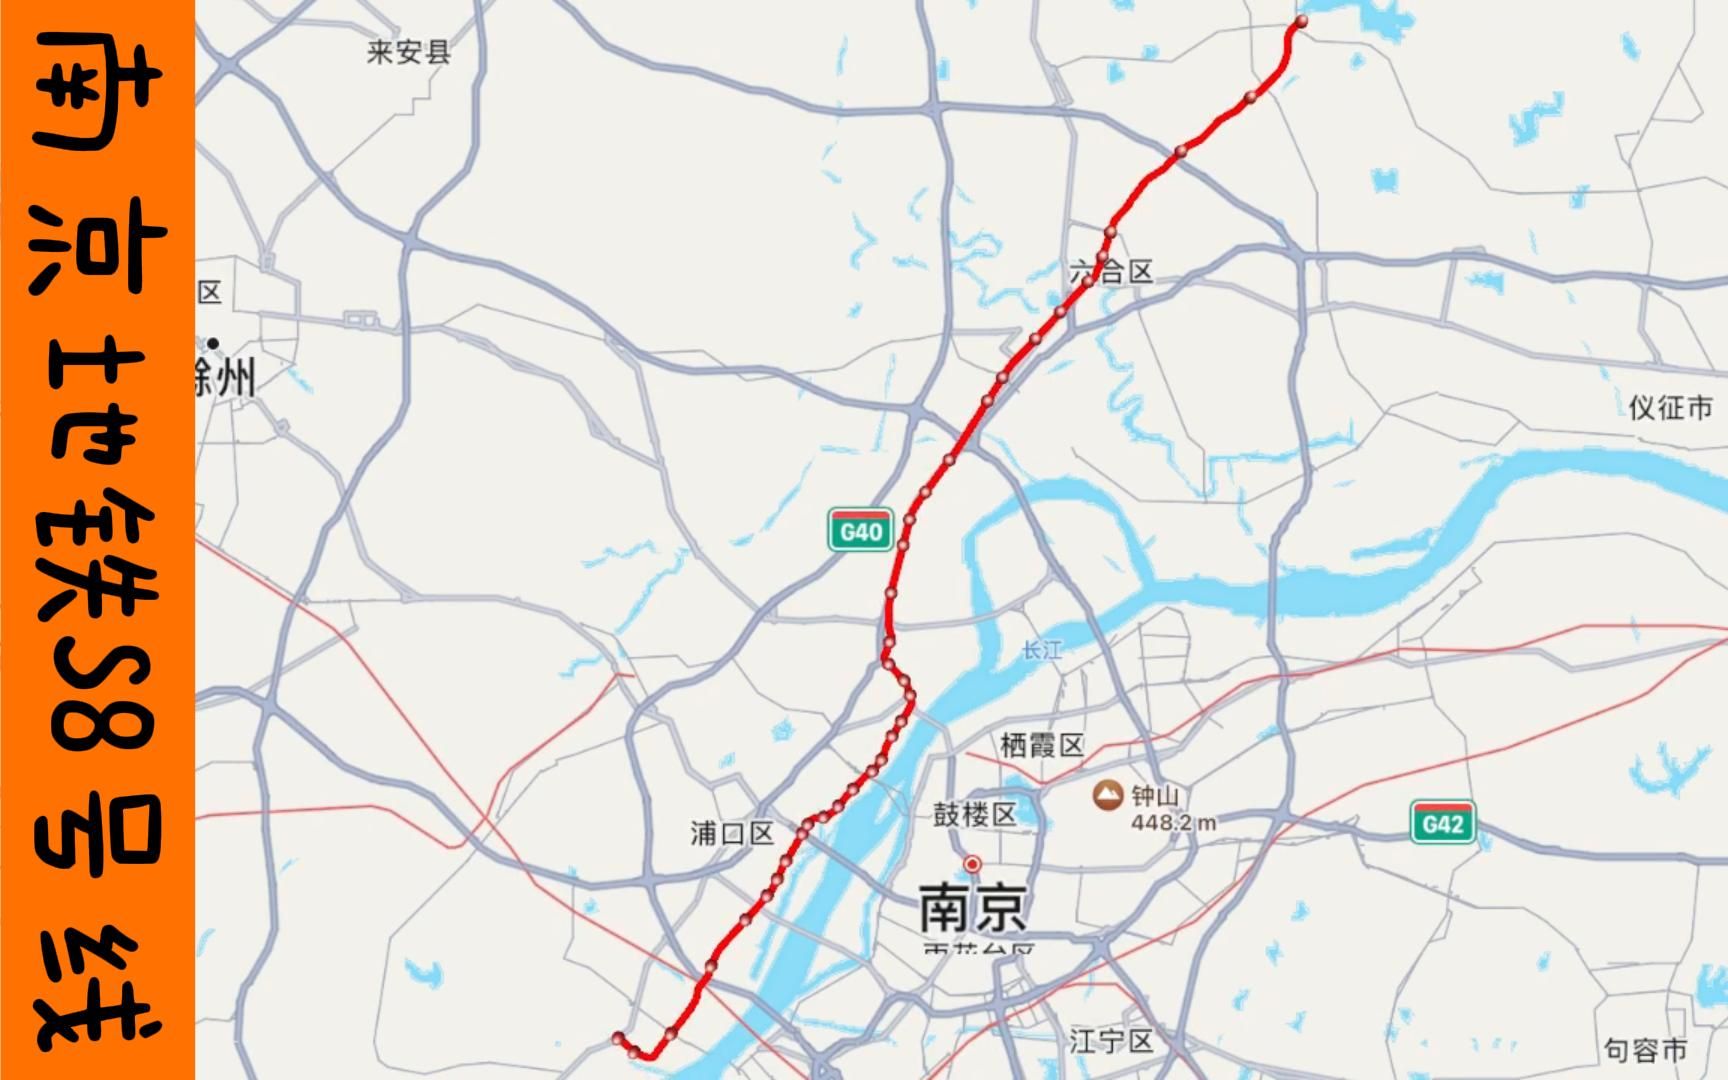 南京地铁s8南延线图片